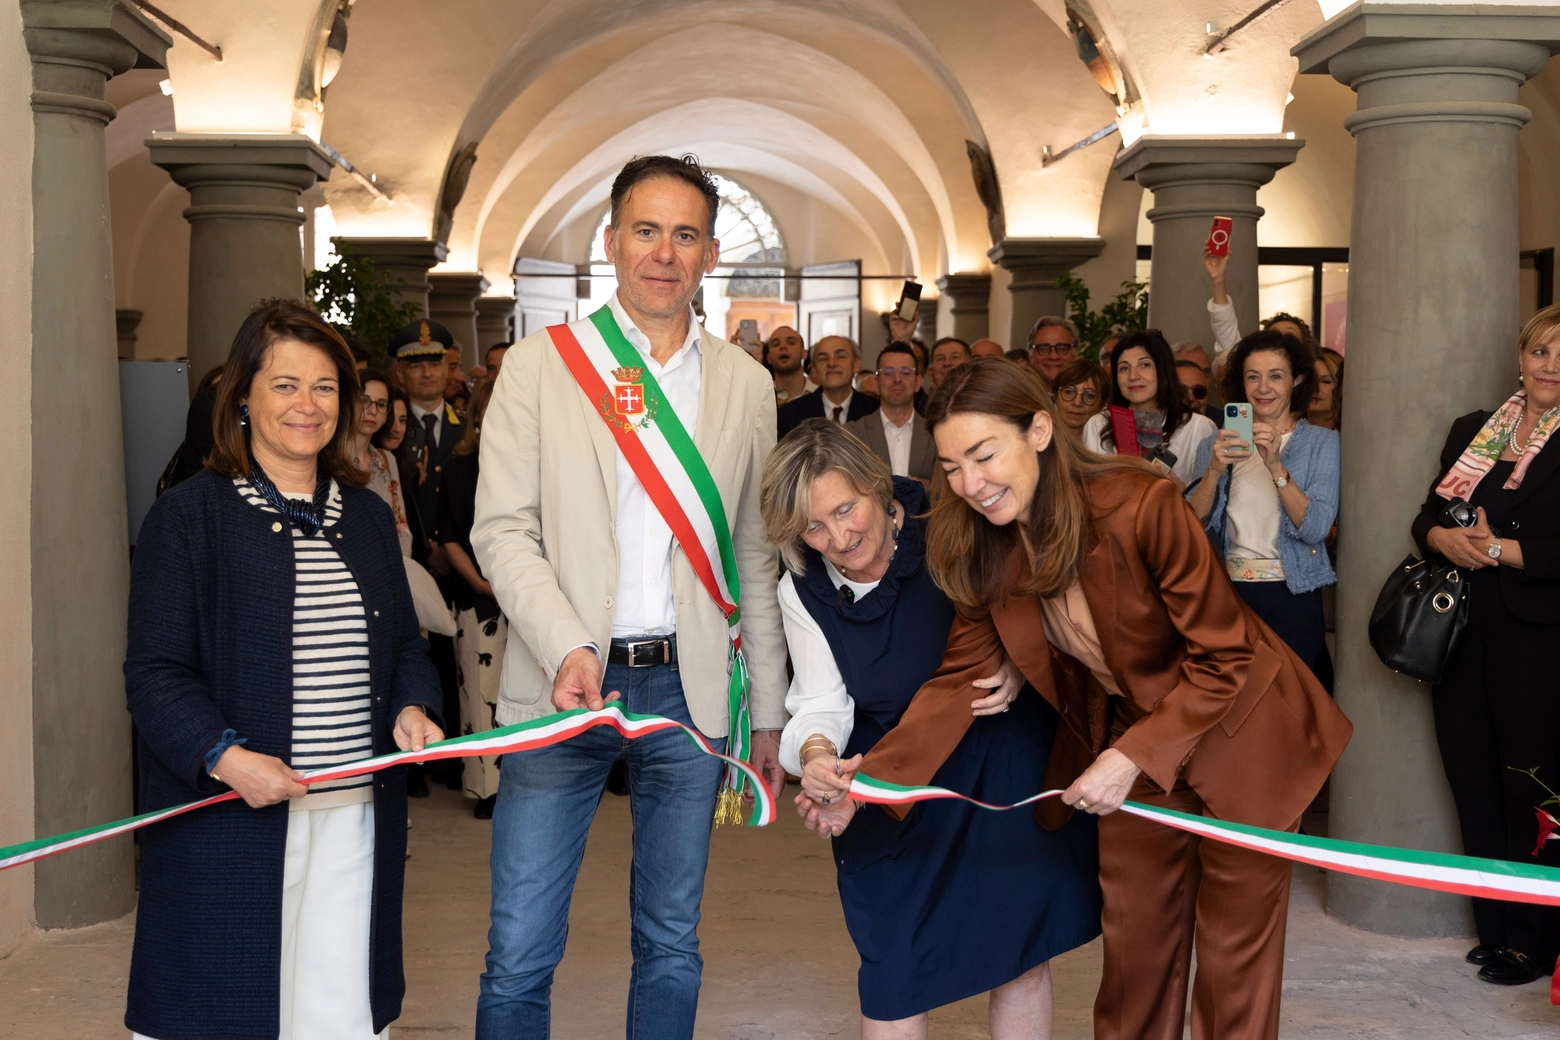 Inaugurazione nuova sede Sant'Anna a Palazzo Boyl pisa in pieno centro storico